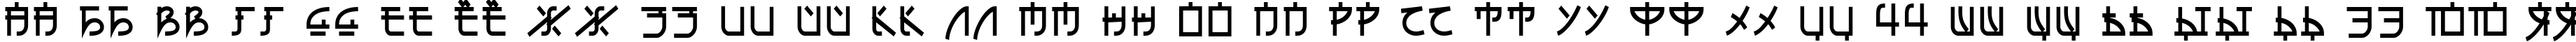 Пример написания русского алфавита шрифтом Eh_cyr